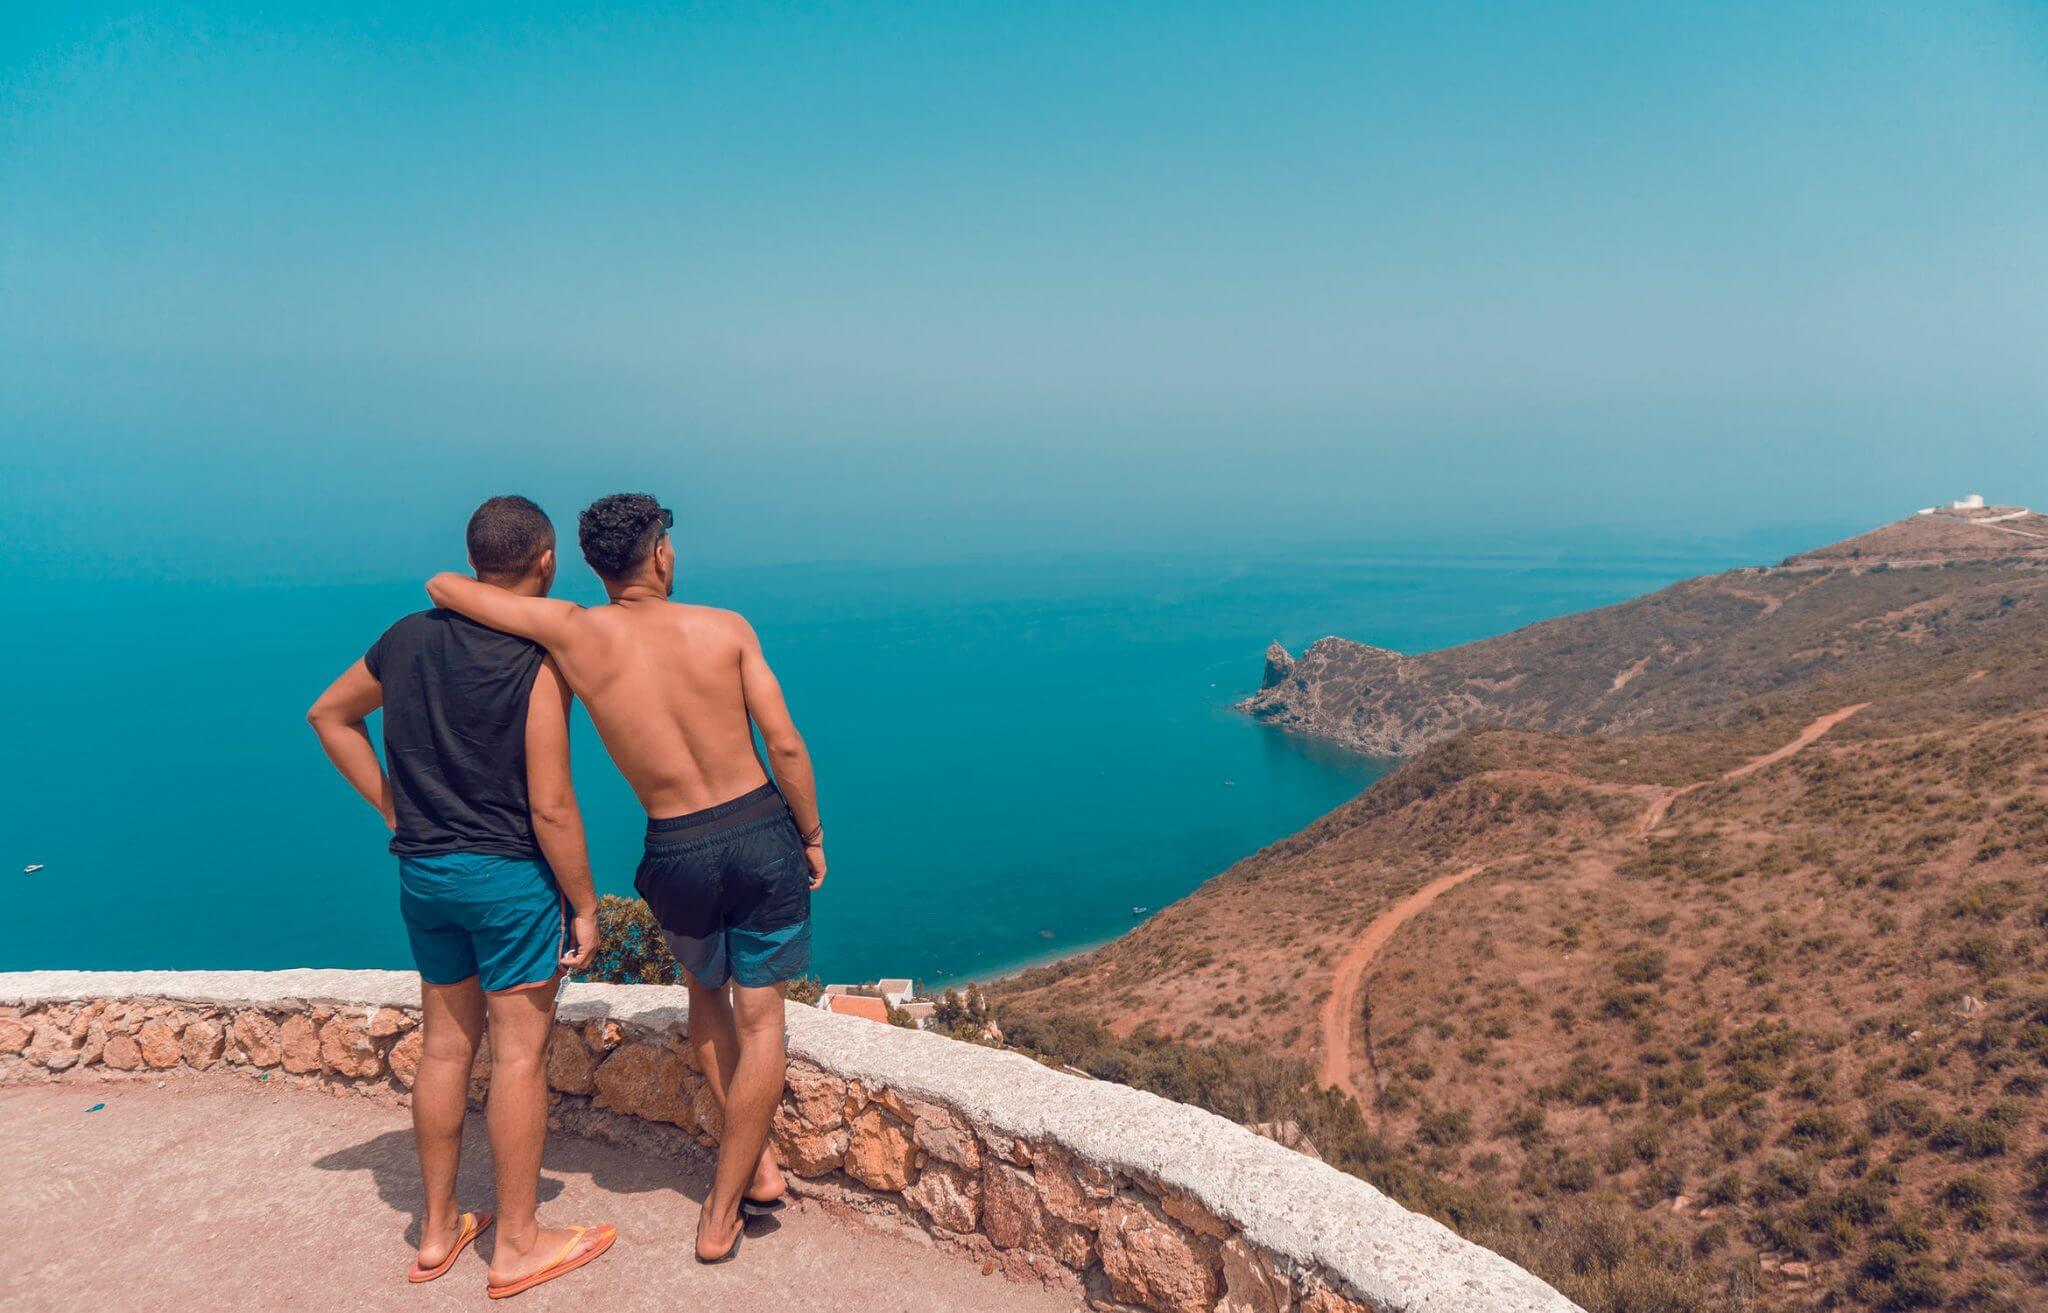 La vacanza gay-friendly lungo lo Stivale: mare o montagna? - vacanza gay friendly - Gay.it